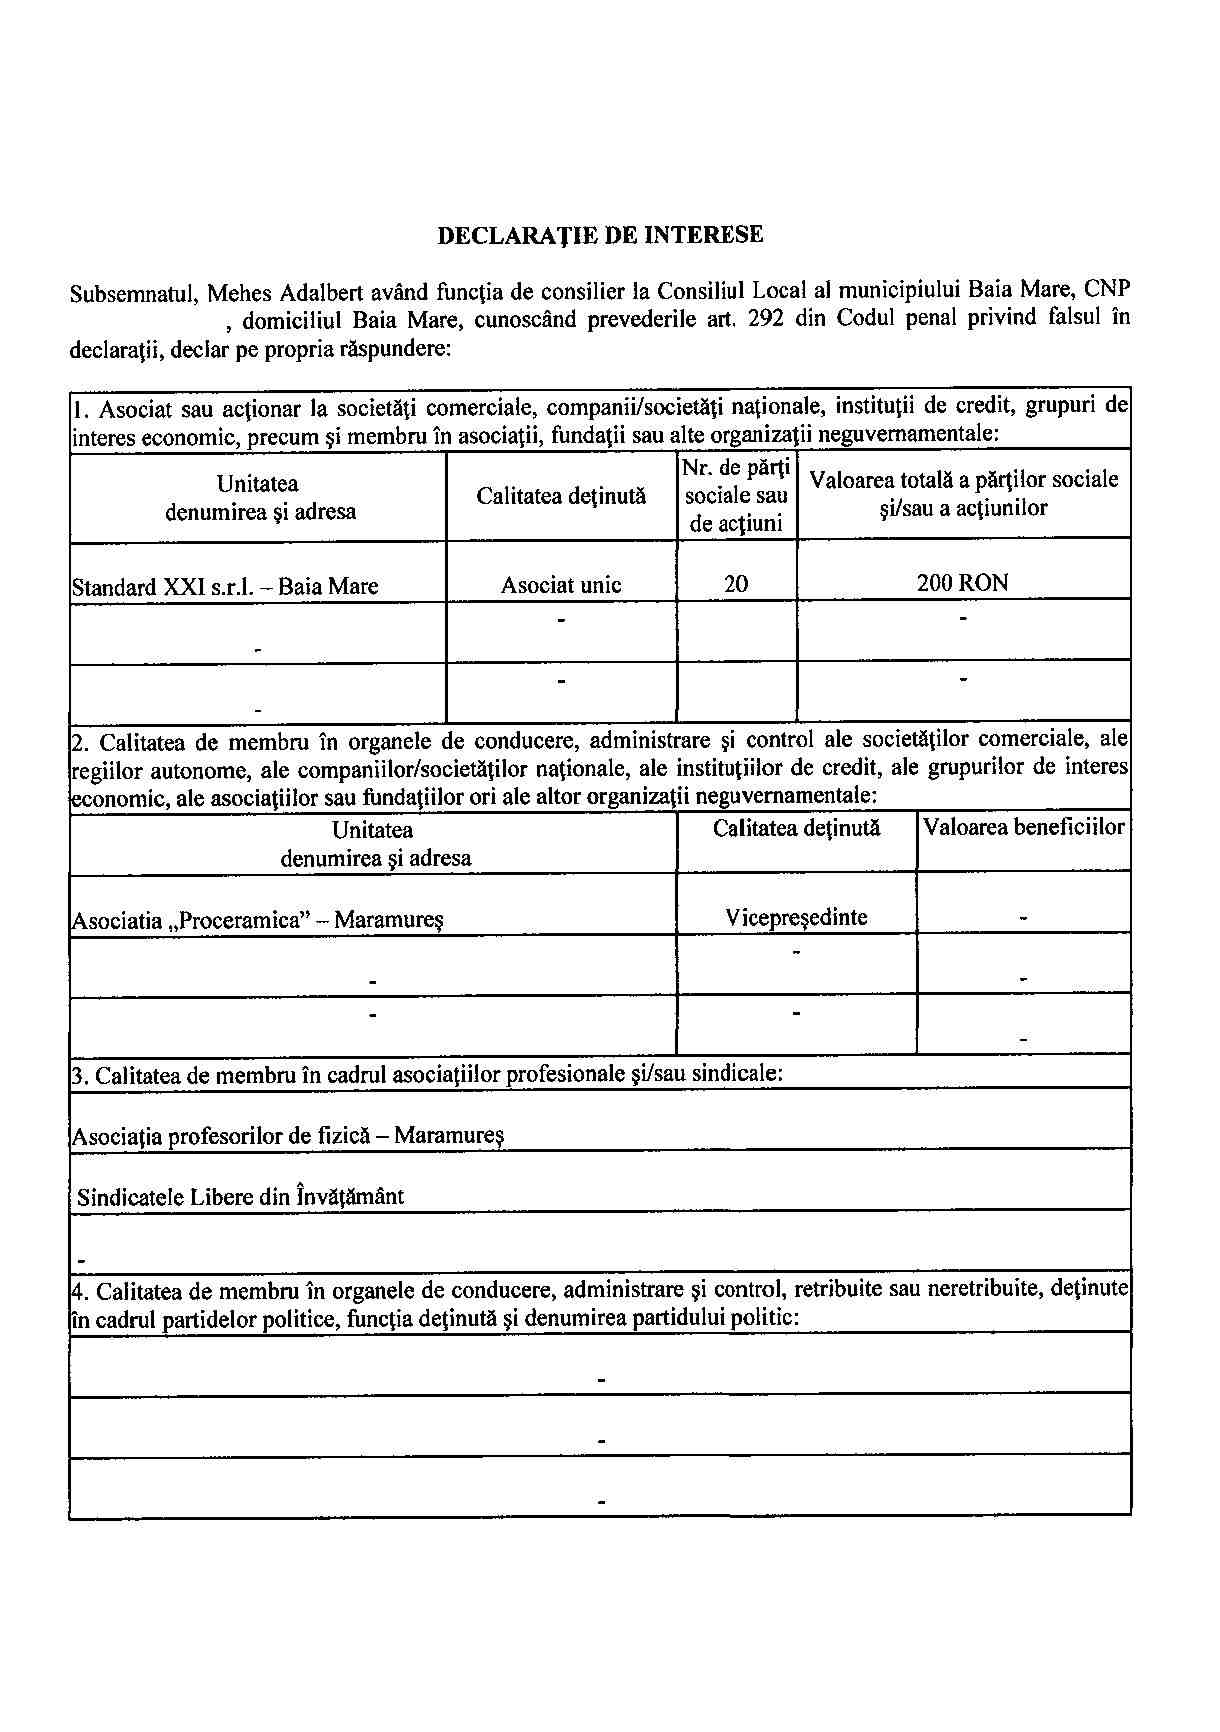 Declaratia de avere si de interese din data 18.06.2012 - pagina 5 din 6